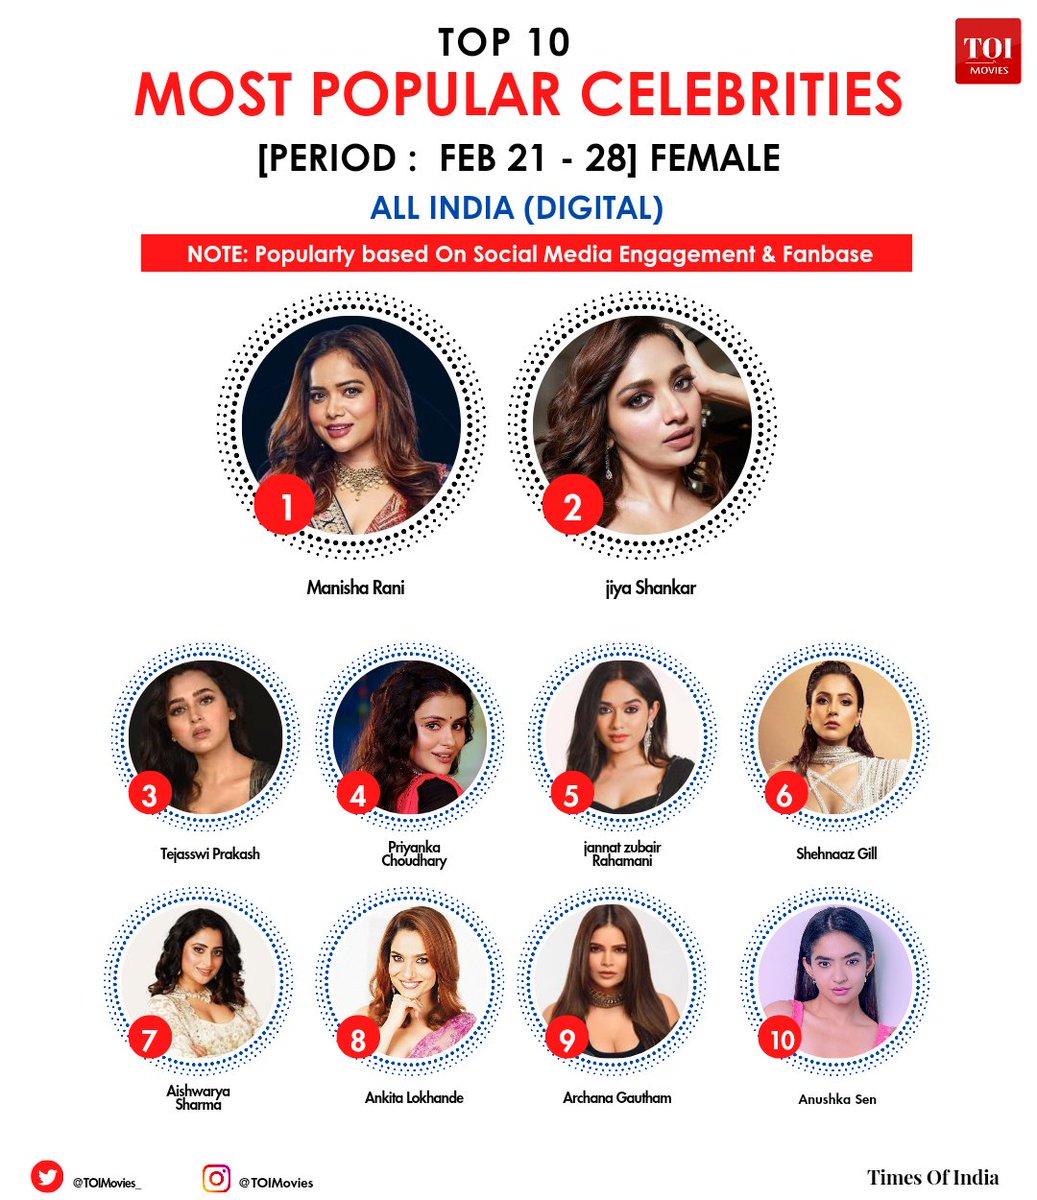 Most Popular Digital Celebrities (Apr 21-28) Female 

1. #ManishaRani 
2. #JiyaShankar 
3. #TejasswiPrakash 
4. #PriyankaChaharChoudhary 
5. #JannatZubairRahmani
6. #ShehnaazGill 
7. #AishwaryaSharma 
8. #AnkitaLokhande 
9.#ArchanaGautham
10. #AnushkaSen